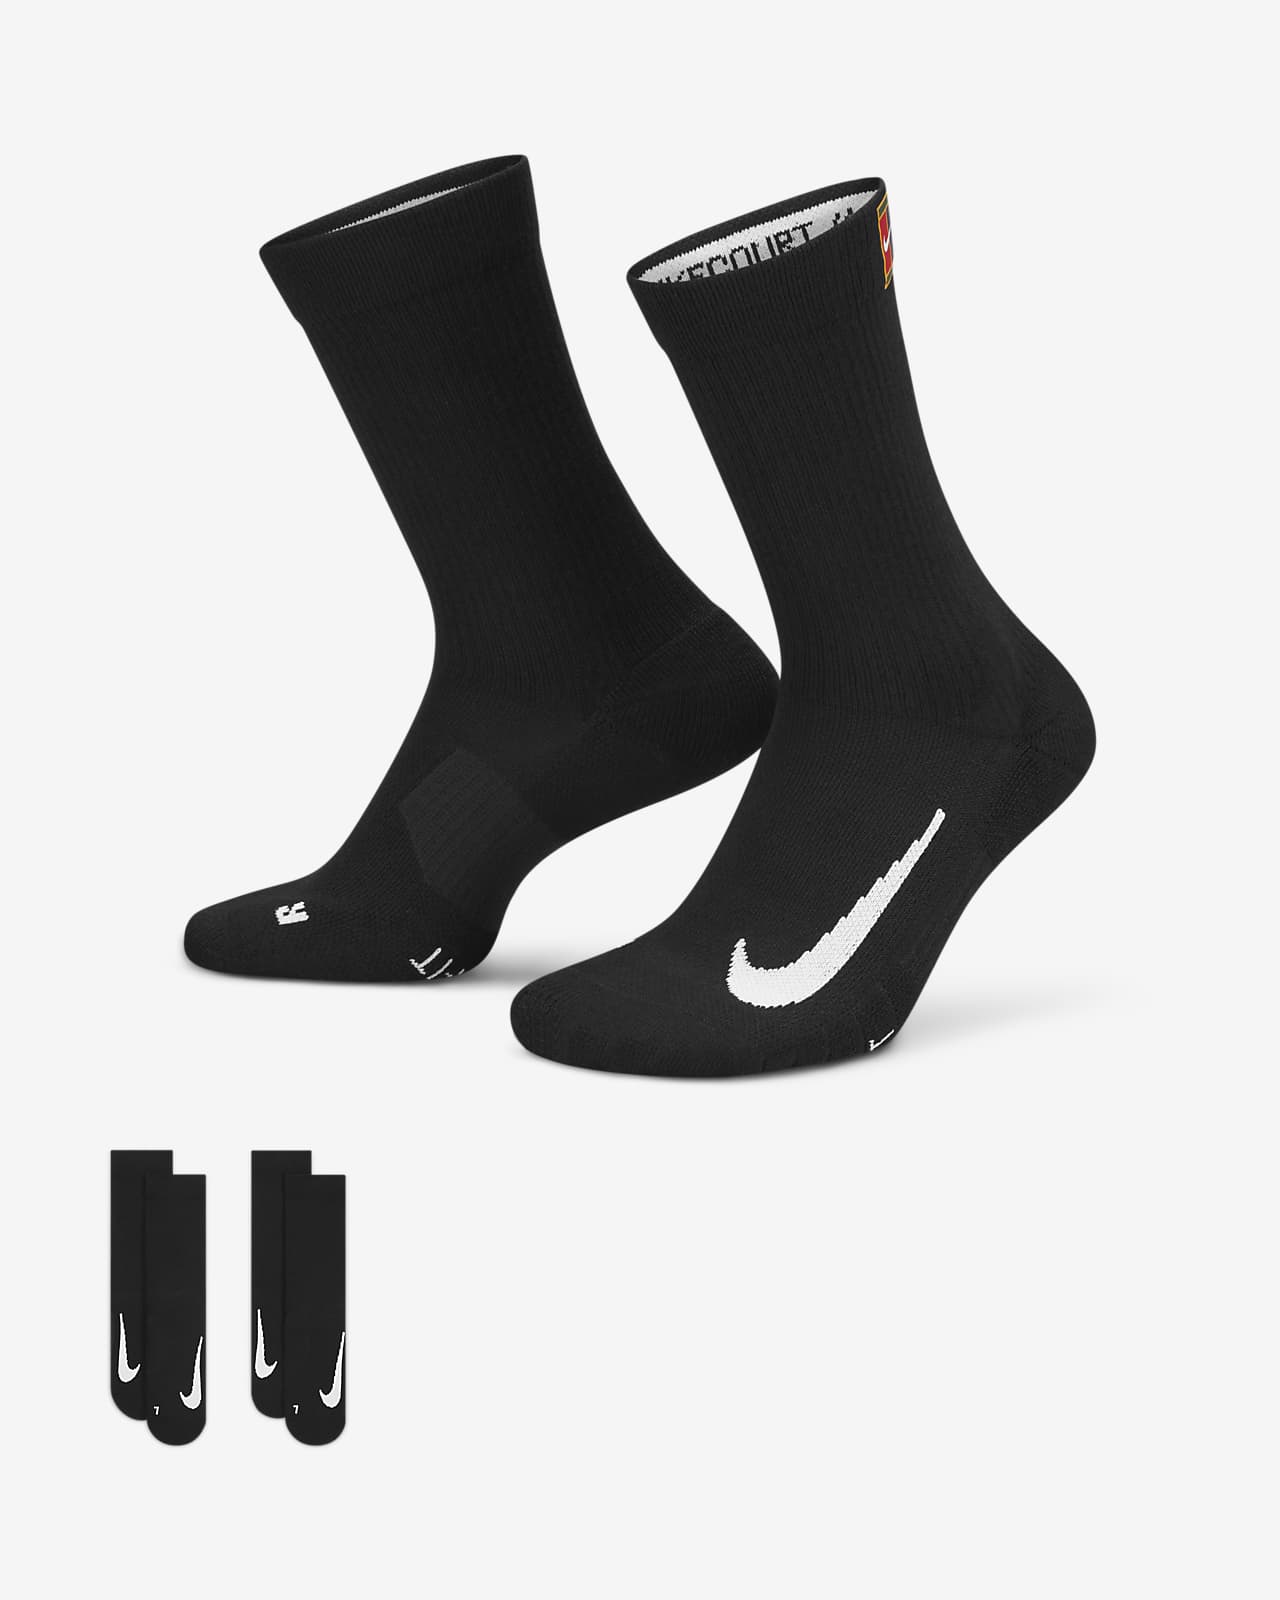 Κάλτσες τένις μεσαίου ύψους NikeCourt Multiplier Cushioned (δύο ζευγάρια)